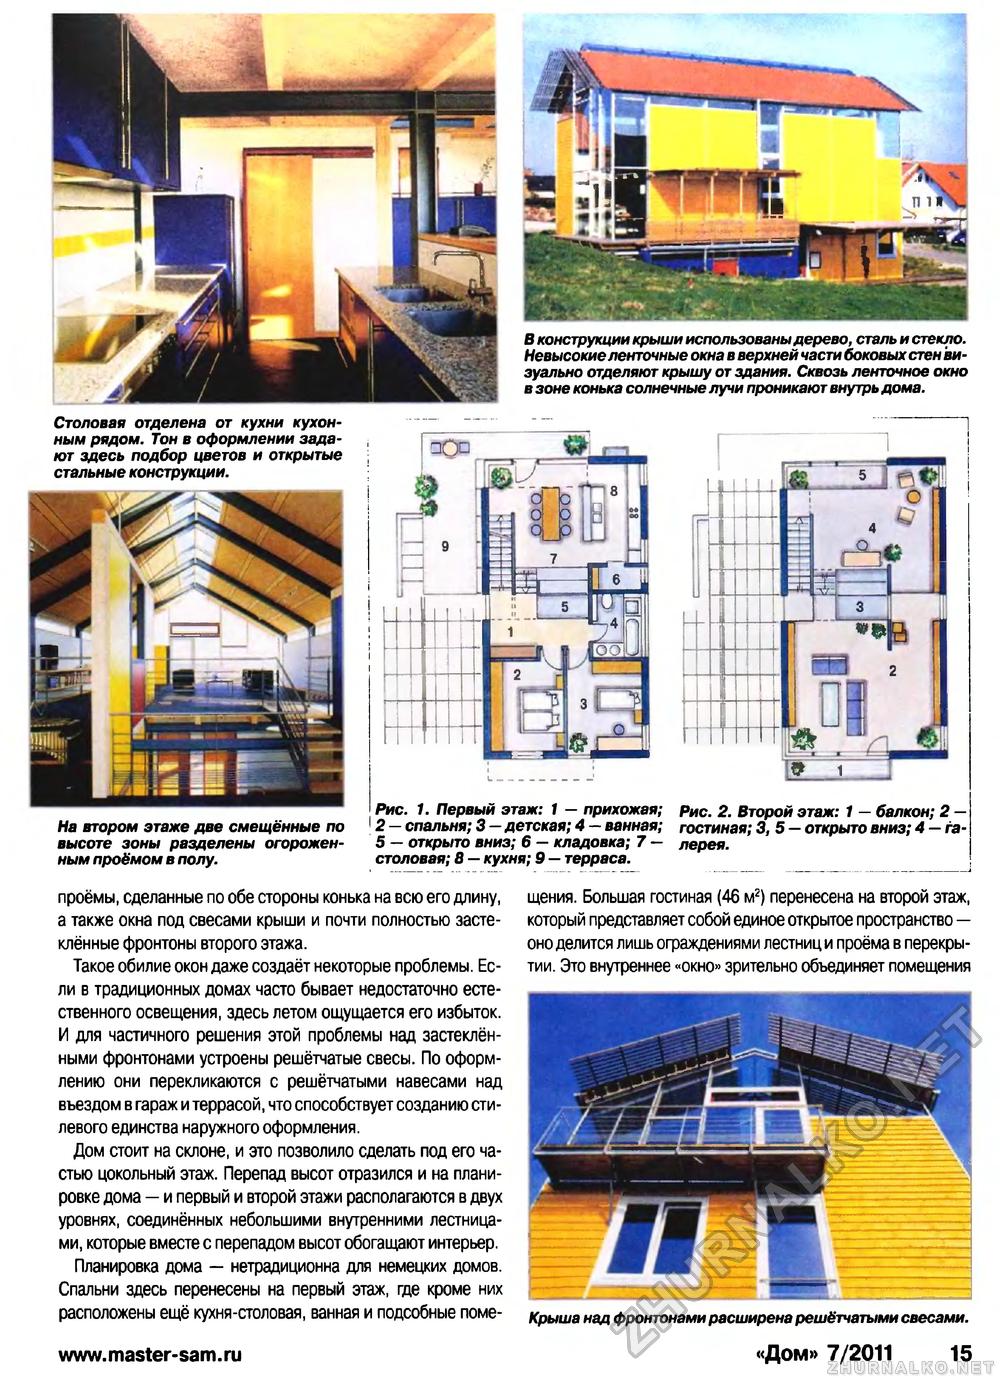 Дом 2011-07, страница 14